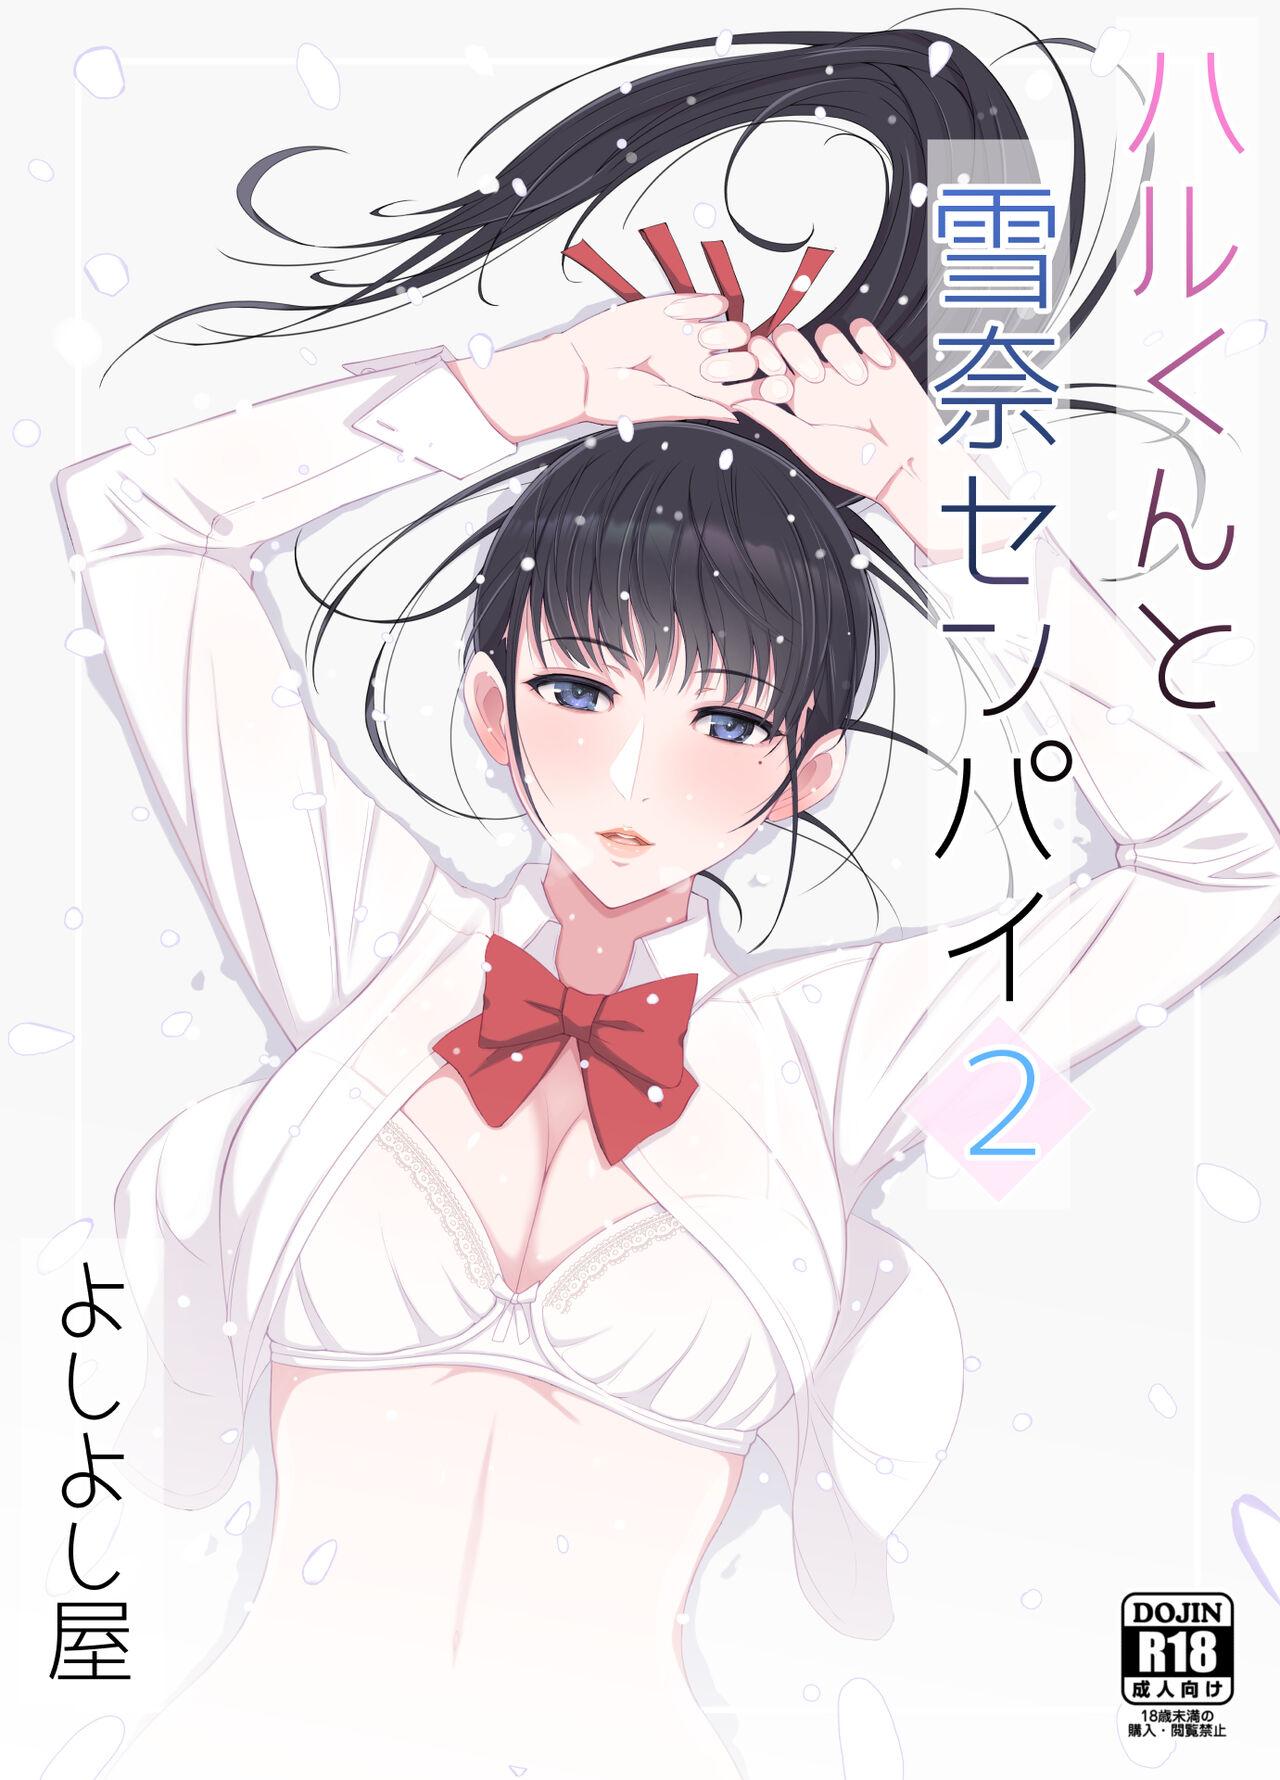 Anal Creampie Haru-kun to Yukina Senpai 2 Small Tits - Picture 1